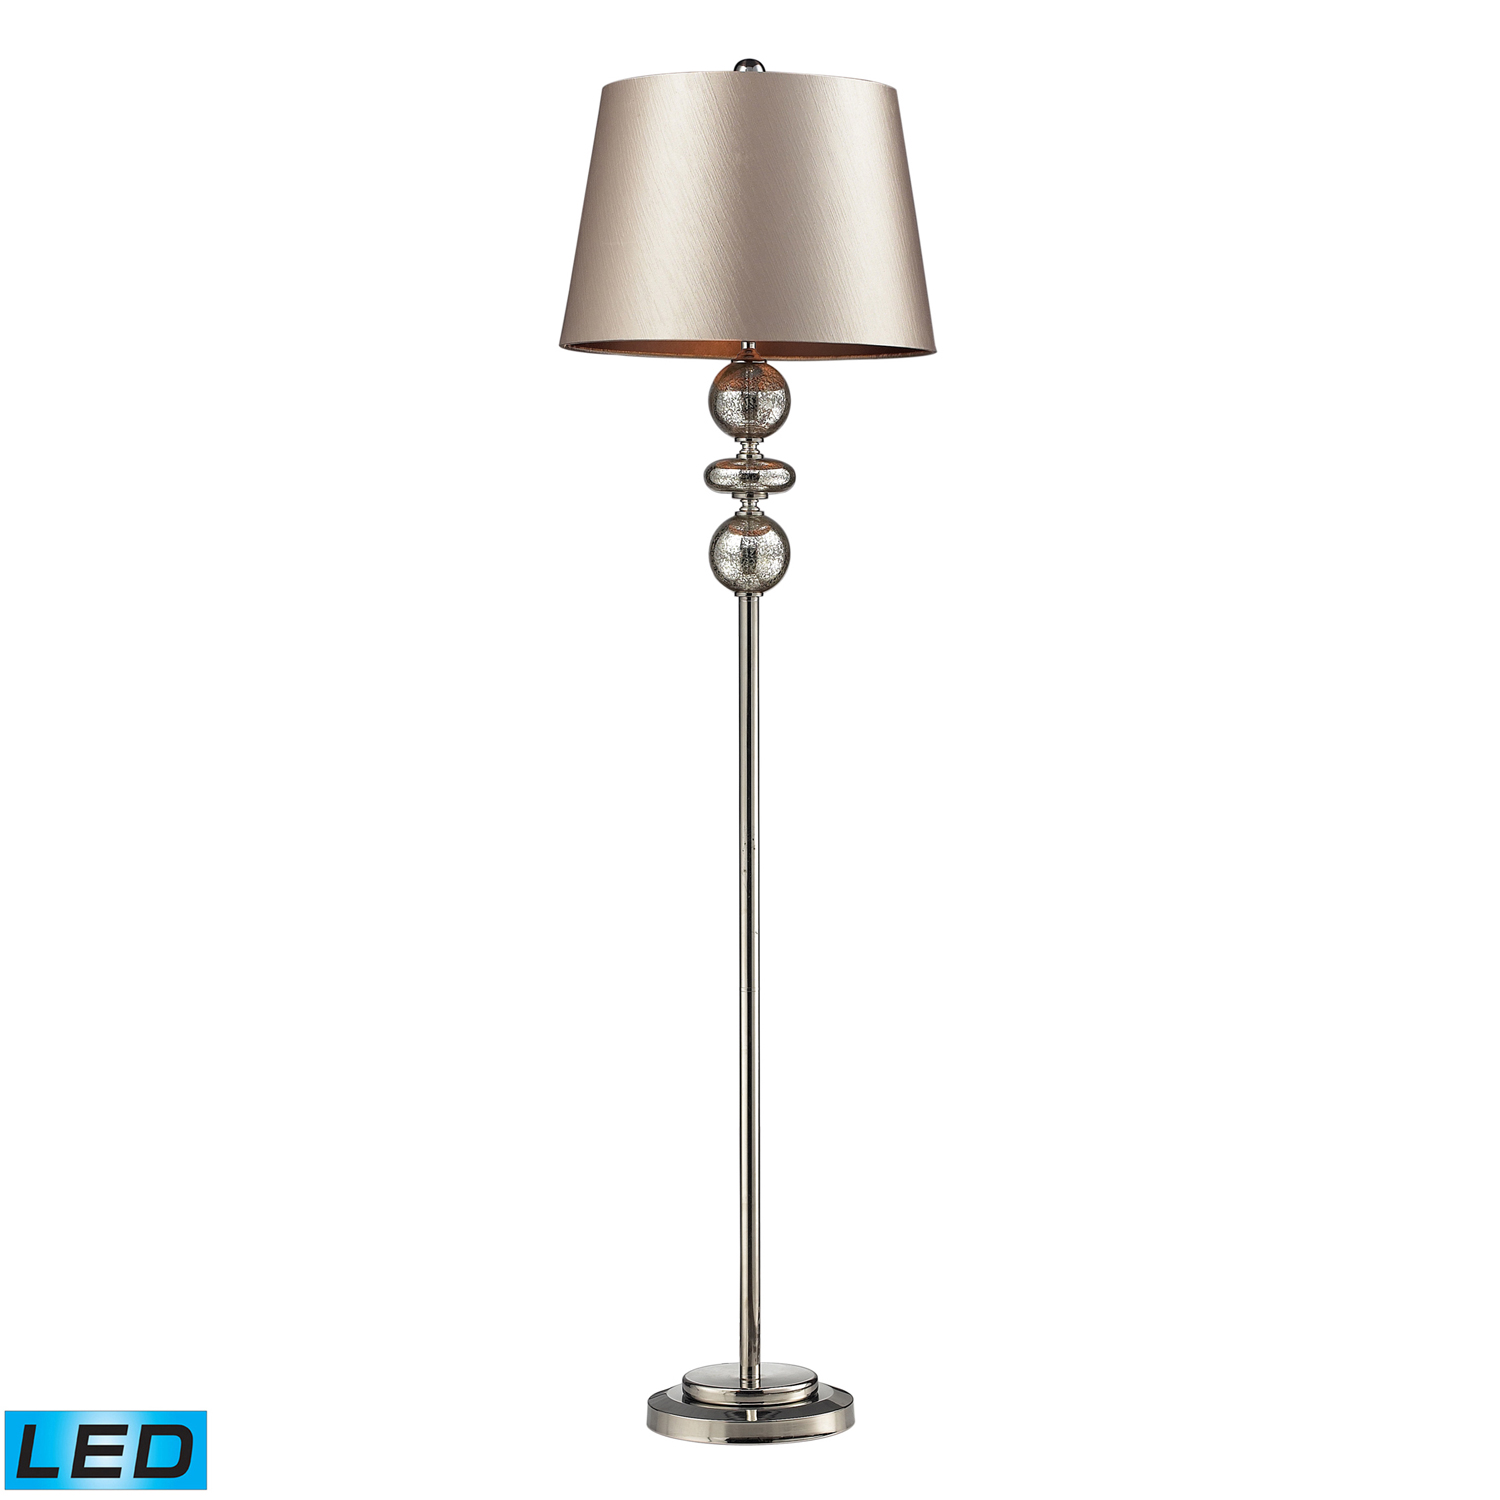 Elk Lighting D2228-LED Hollis Floor Lamp - Antique Mercury Glass and Polished Nickle